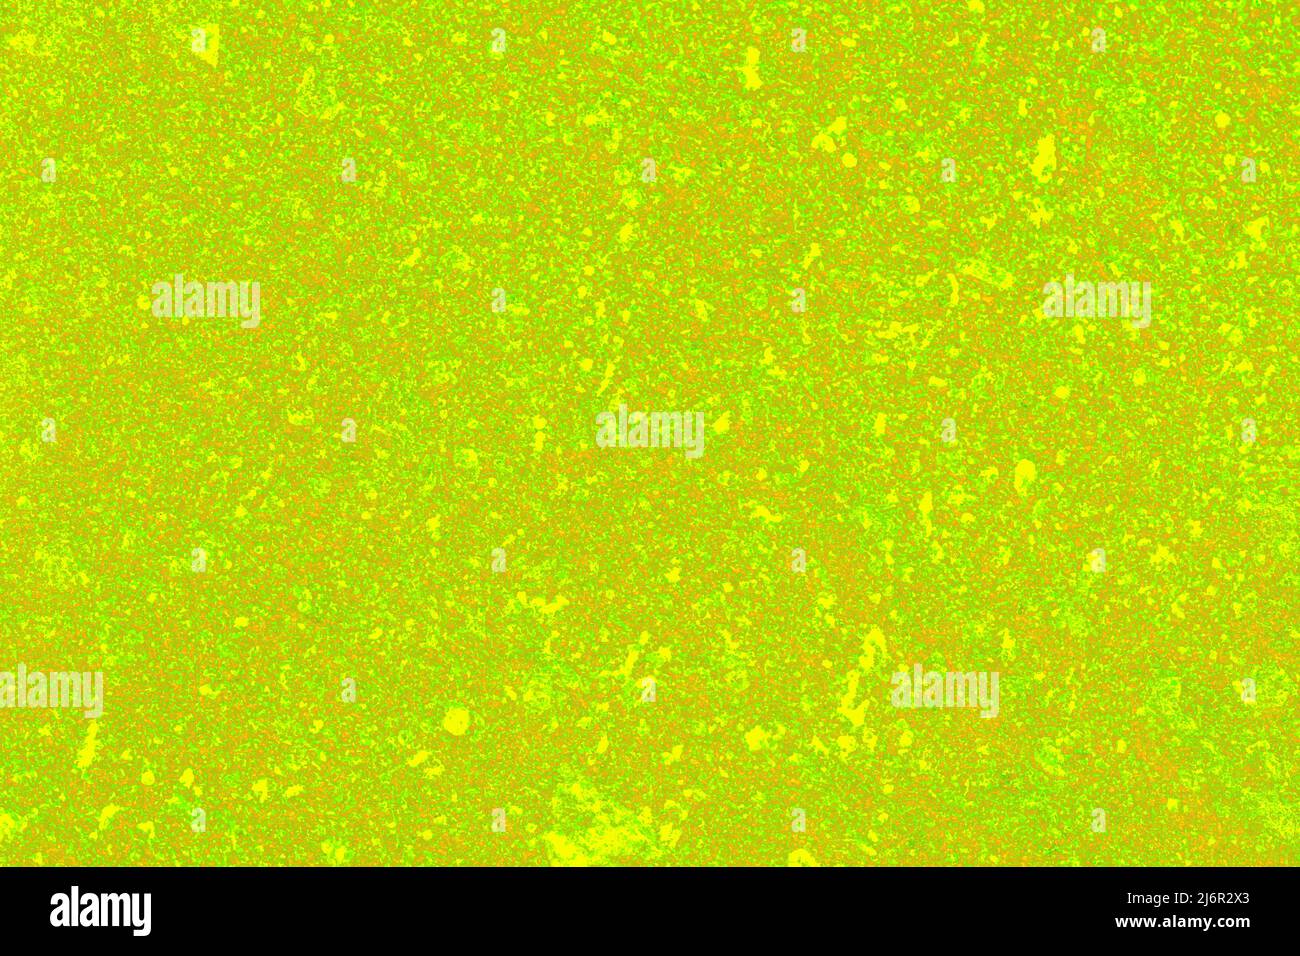 Les couleurs jaune-marron et vert sont un arrière-plan abstrait ou une illustration de texture Banque D'Images